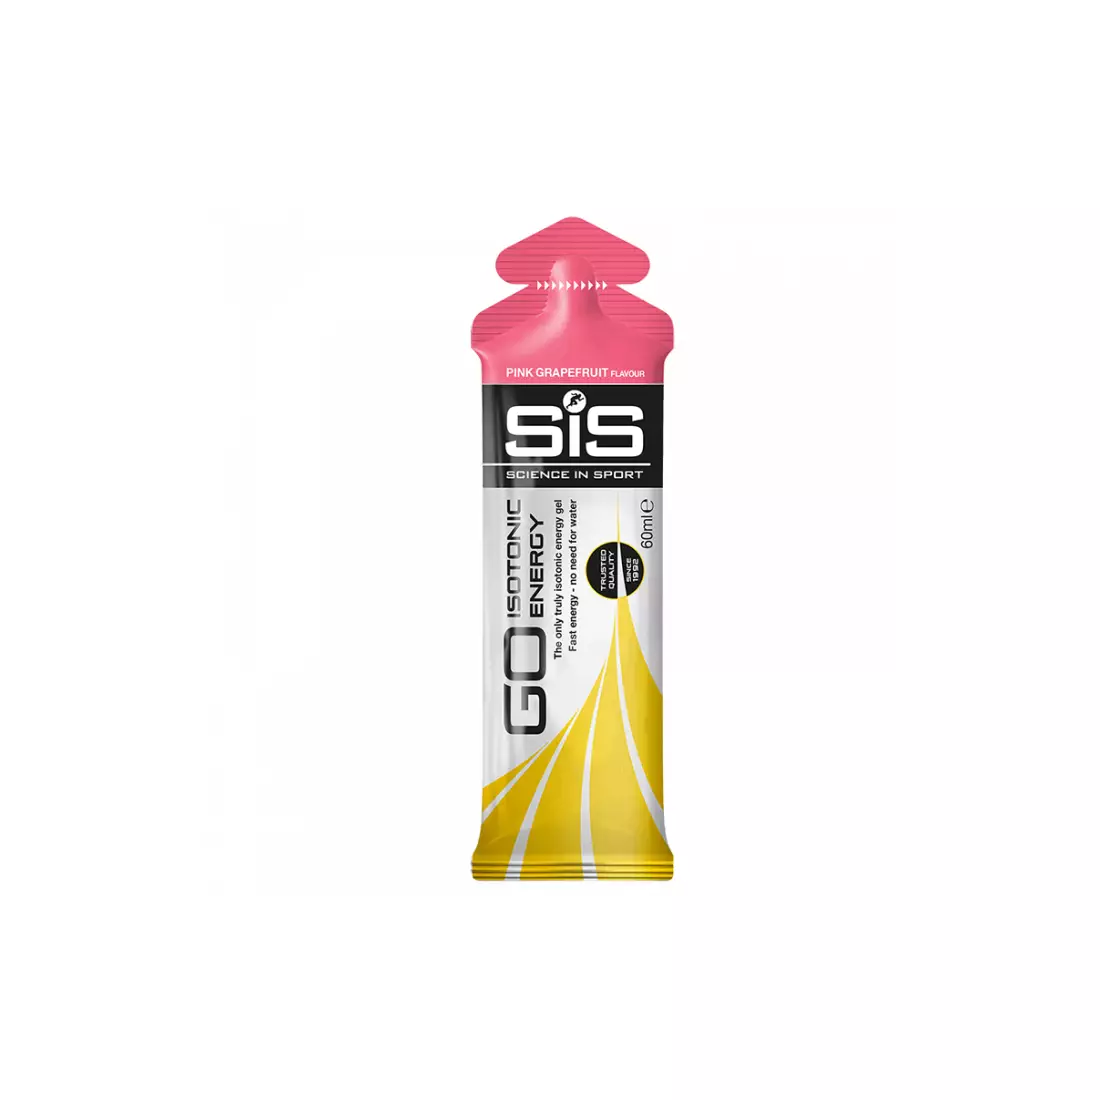 SIS Isotonic Gel SIS002450 Růžový grapefruit 60ml